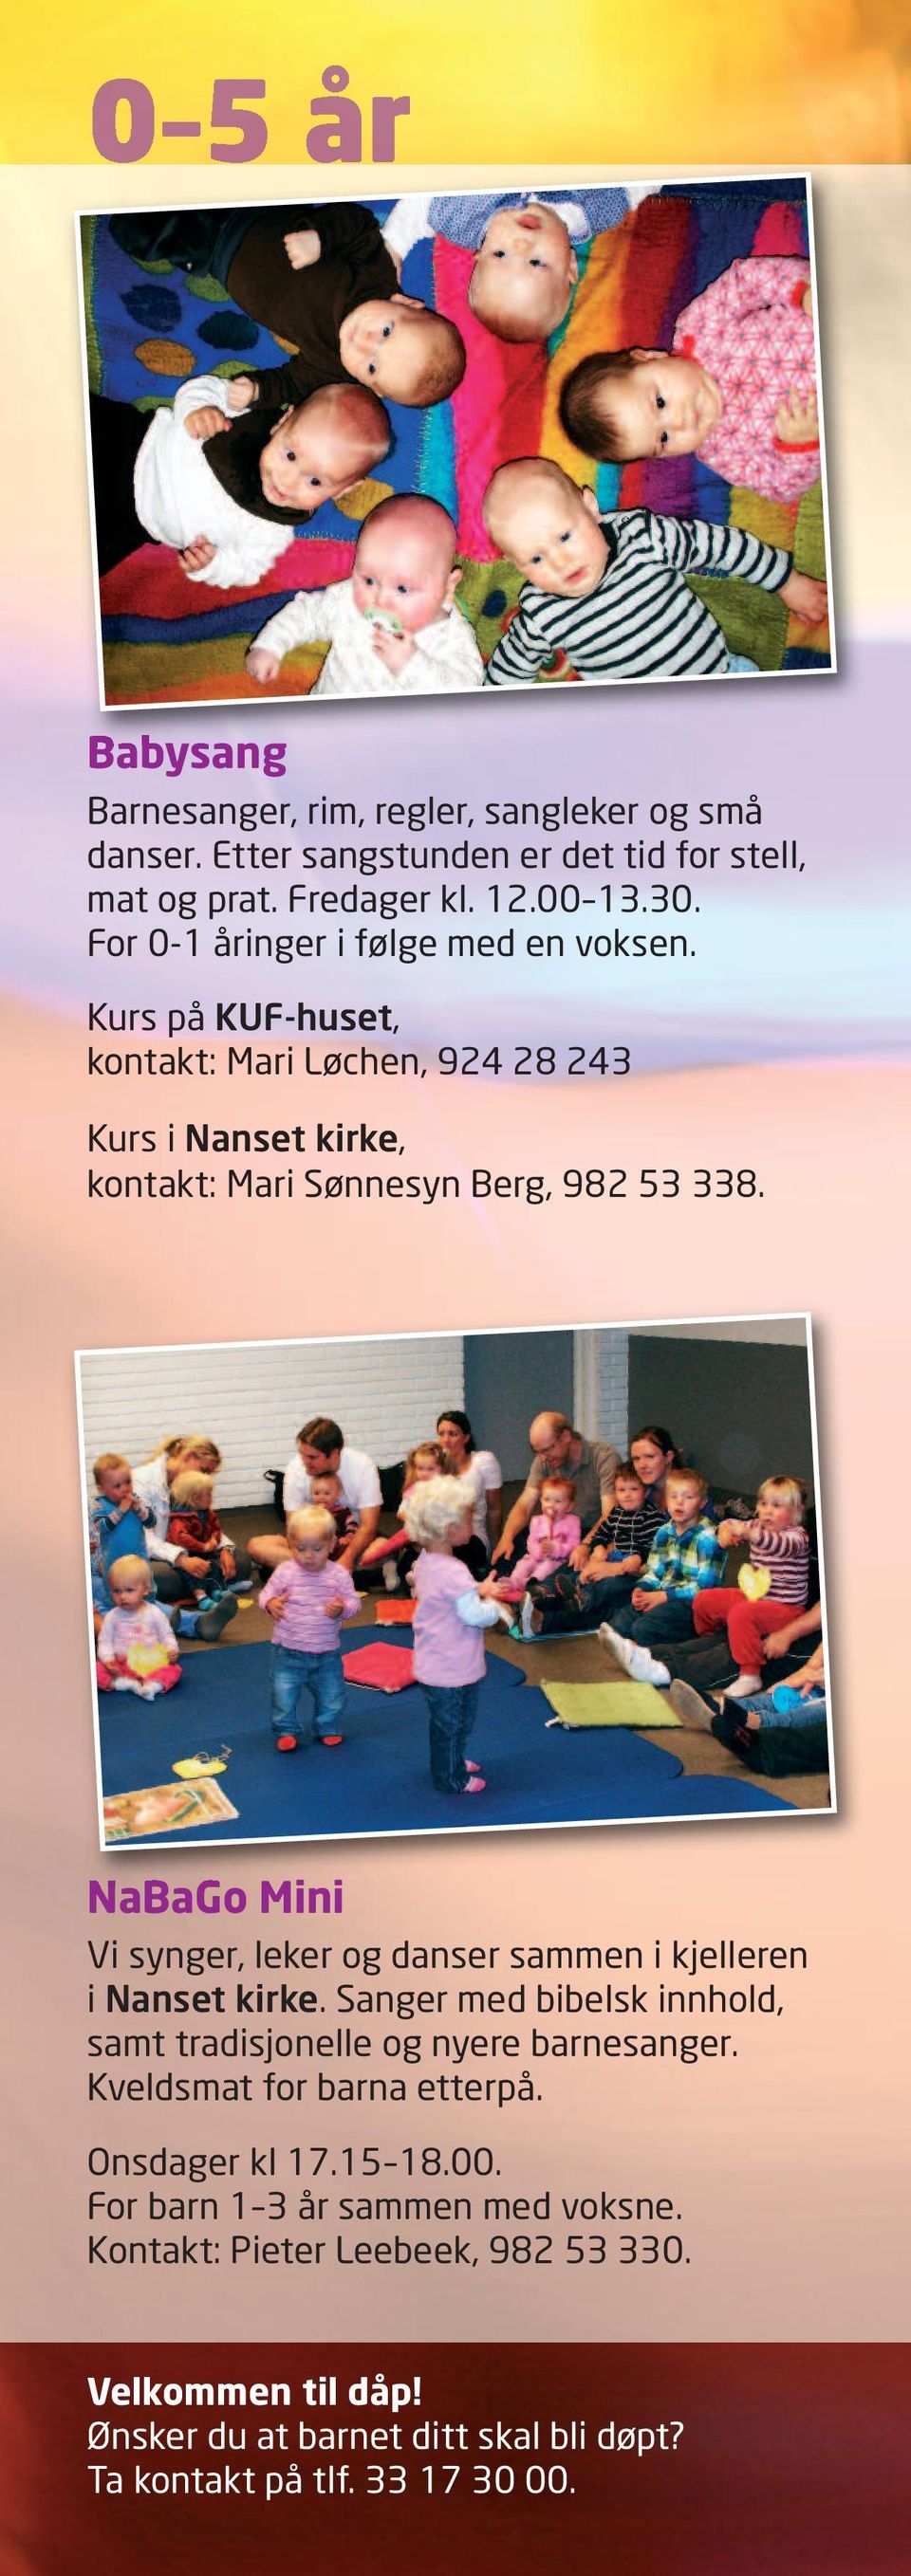 NaBaGo Mini Vi synger, leker og danser sammen i kjelleren i Nanset kirke. Sanger med bibelsk innhold, samt tradisjonelle og nyere barnesanger.